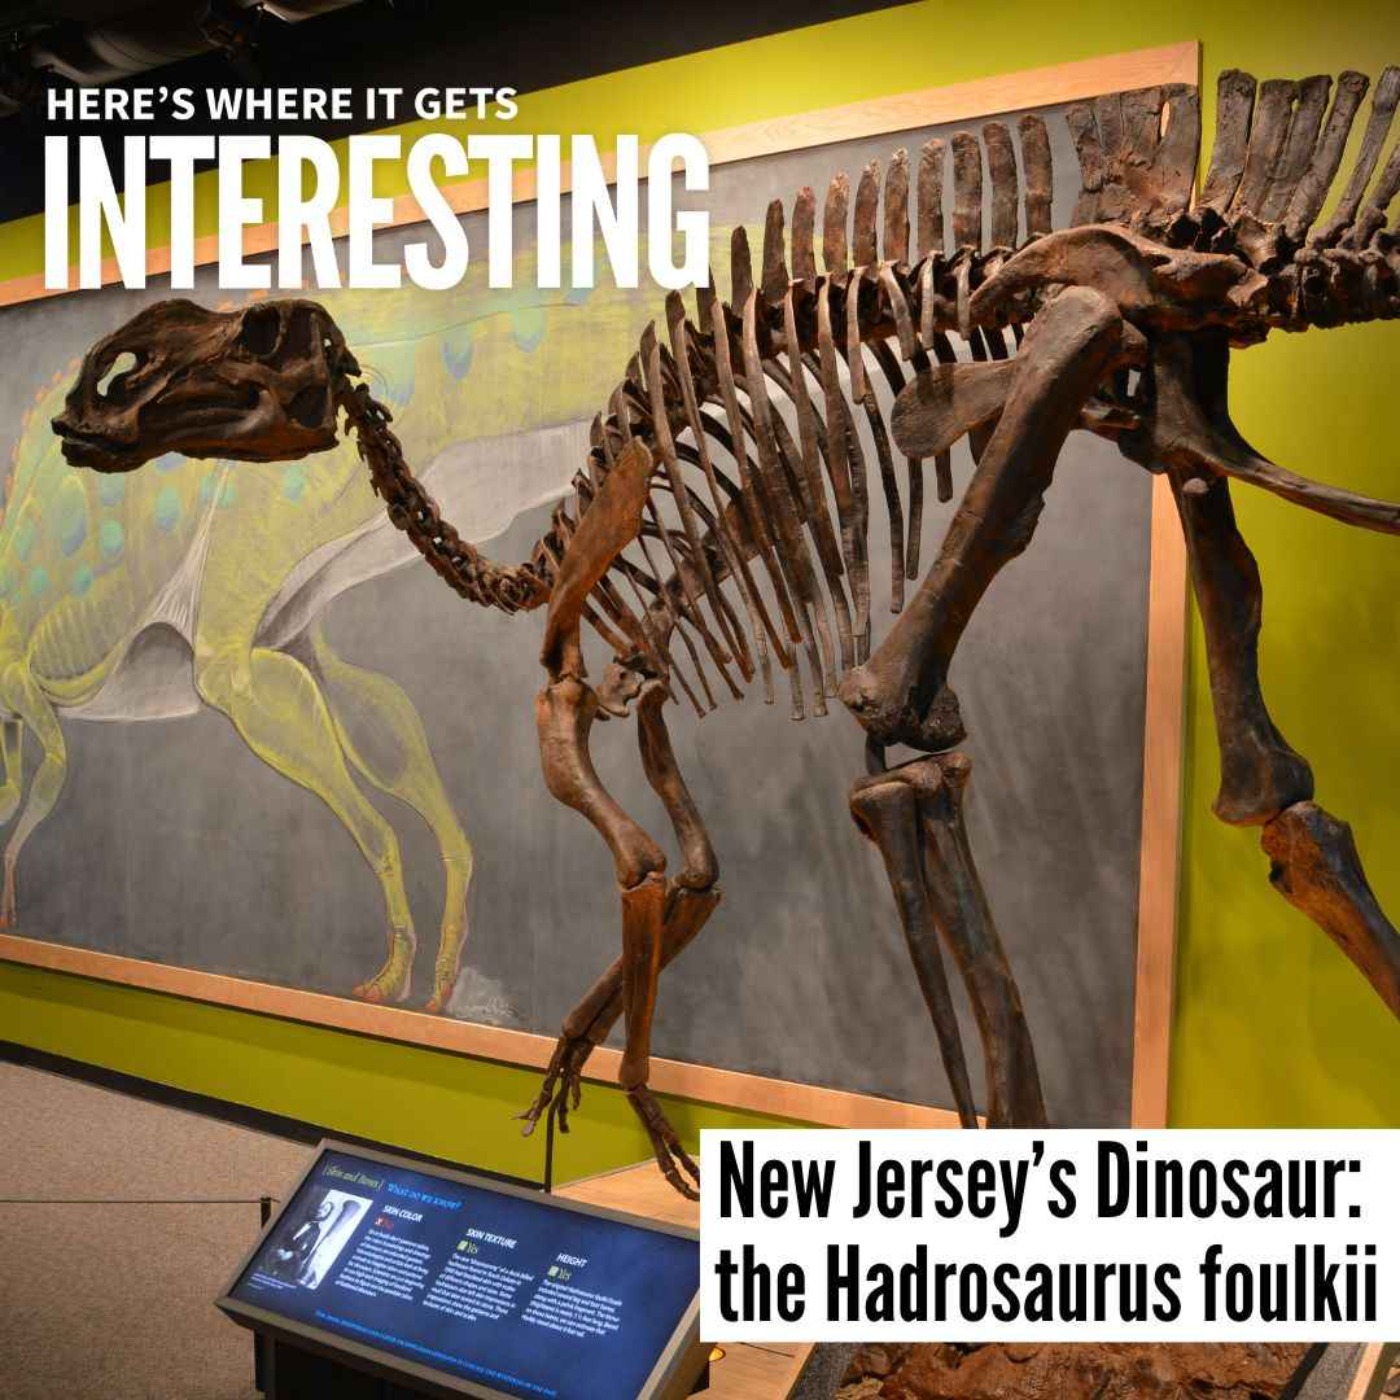 New Jersey’s Dinosaur: The Hadrosaurus foulkii